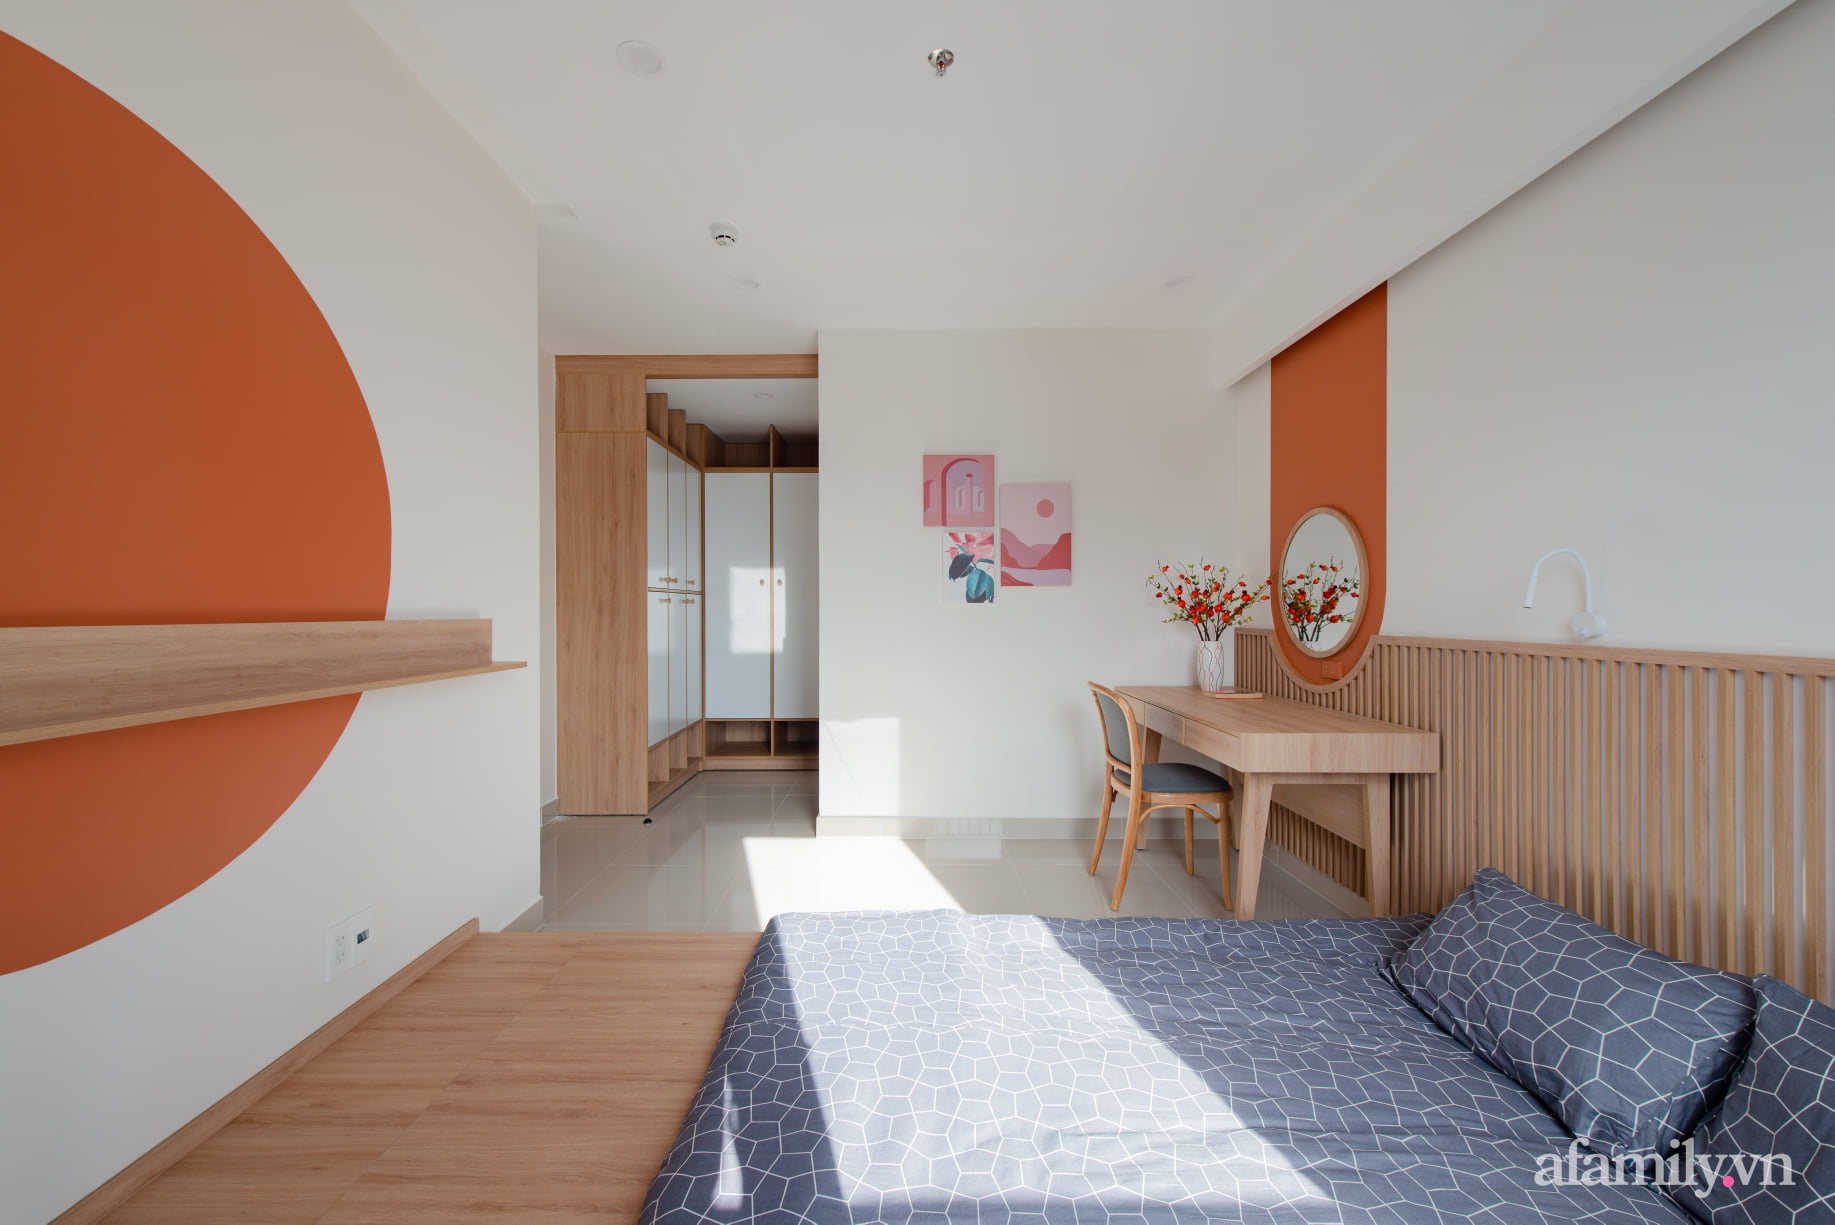 Căn hộ 78m² với tông cam đất ngọt ngào cùng đường cong mềm mại mang hơi hướng phong cách Nhật ở Nha Trang - Ảnh 17.